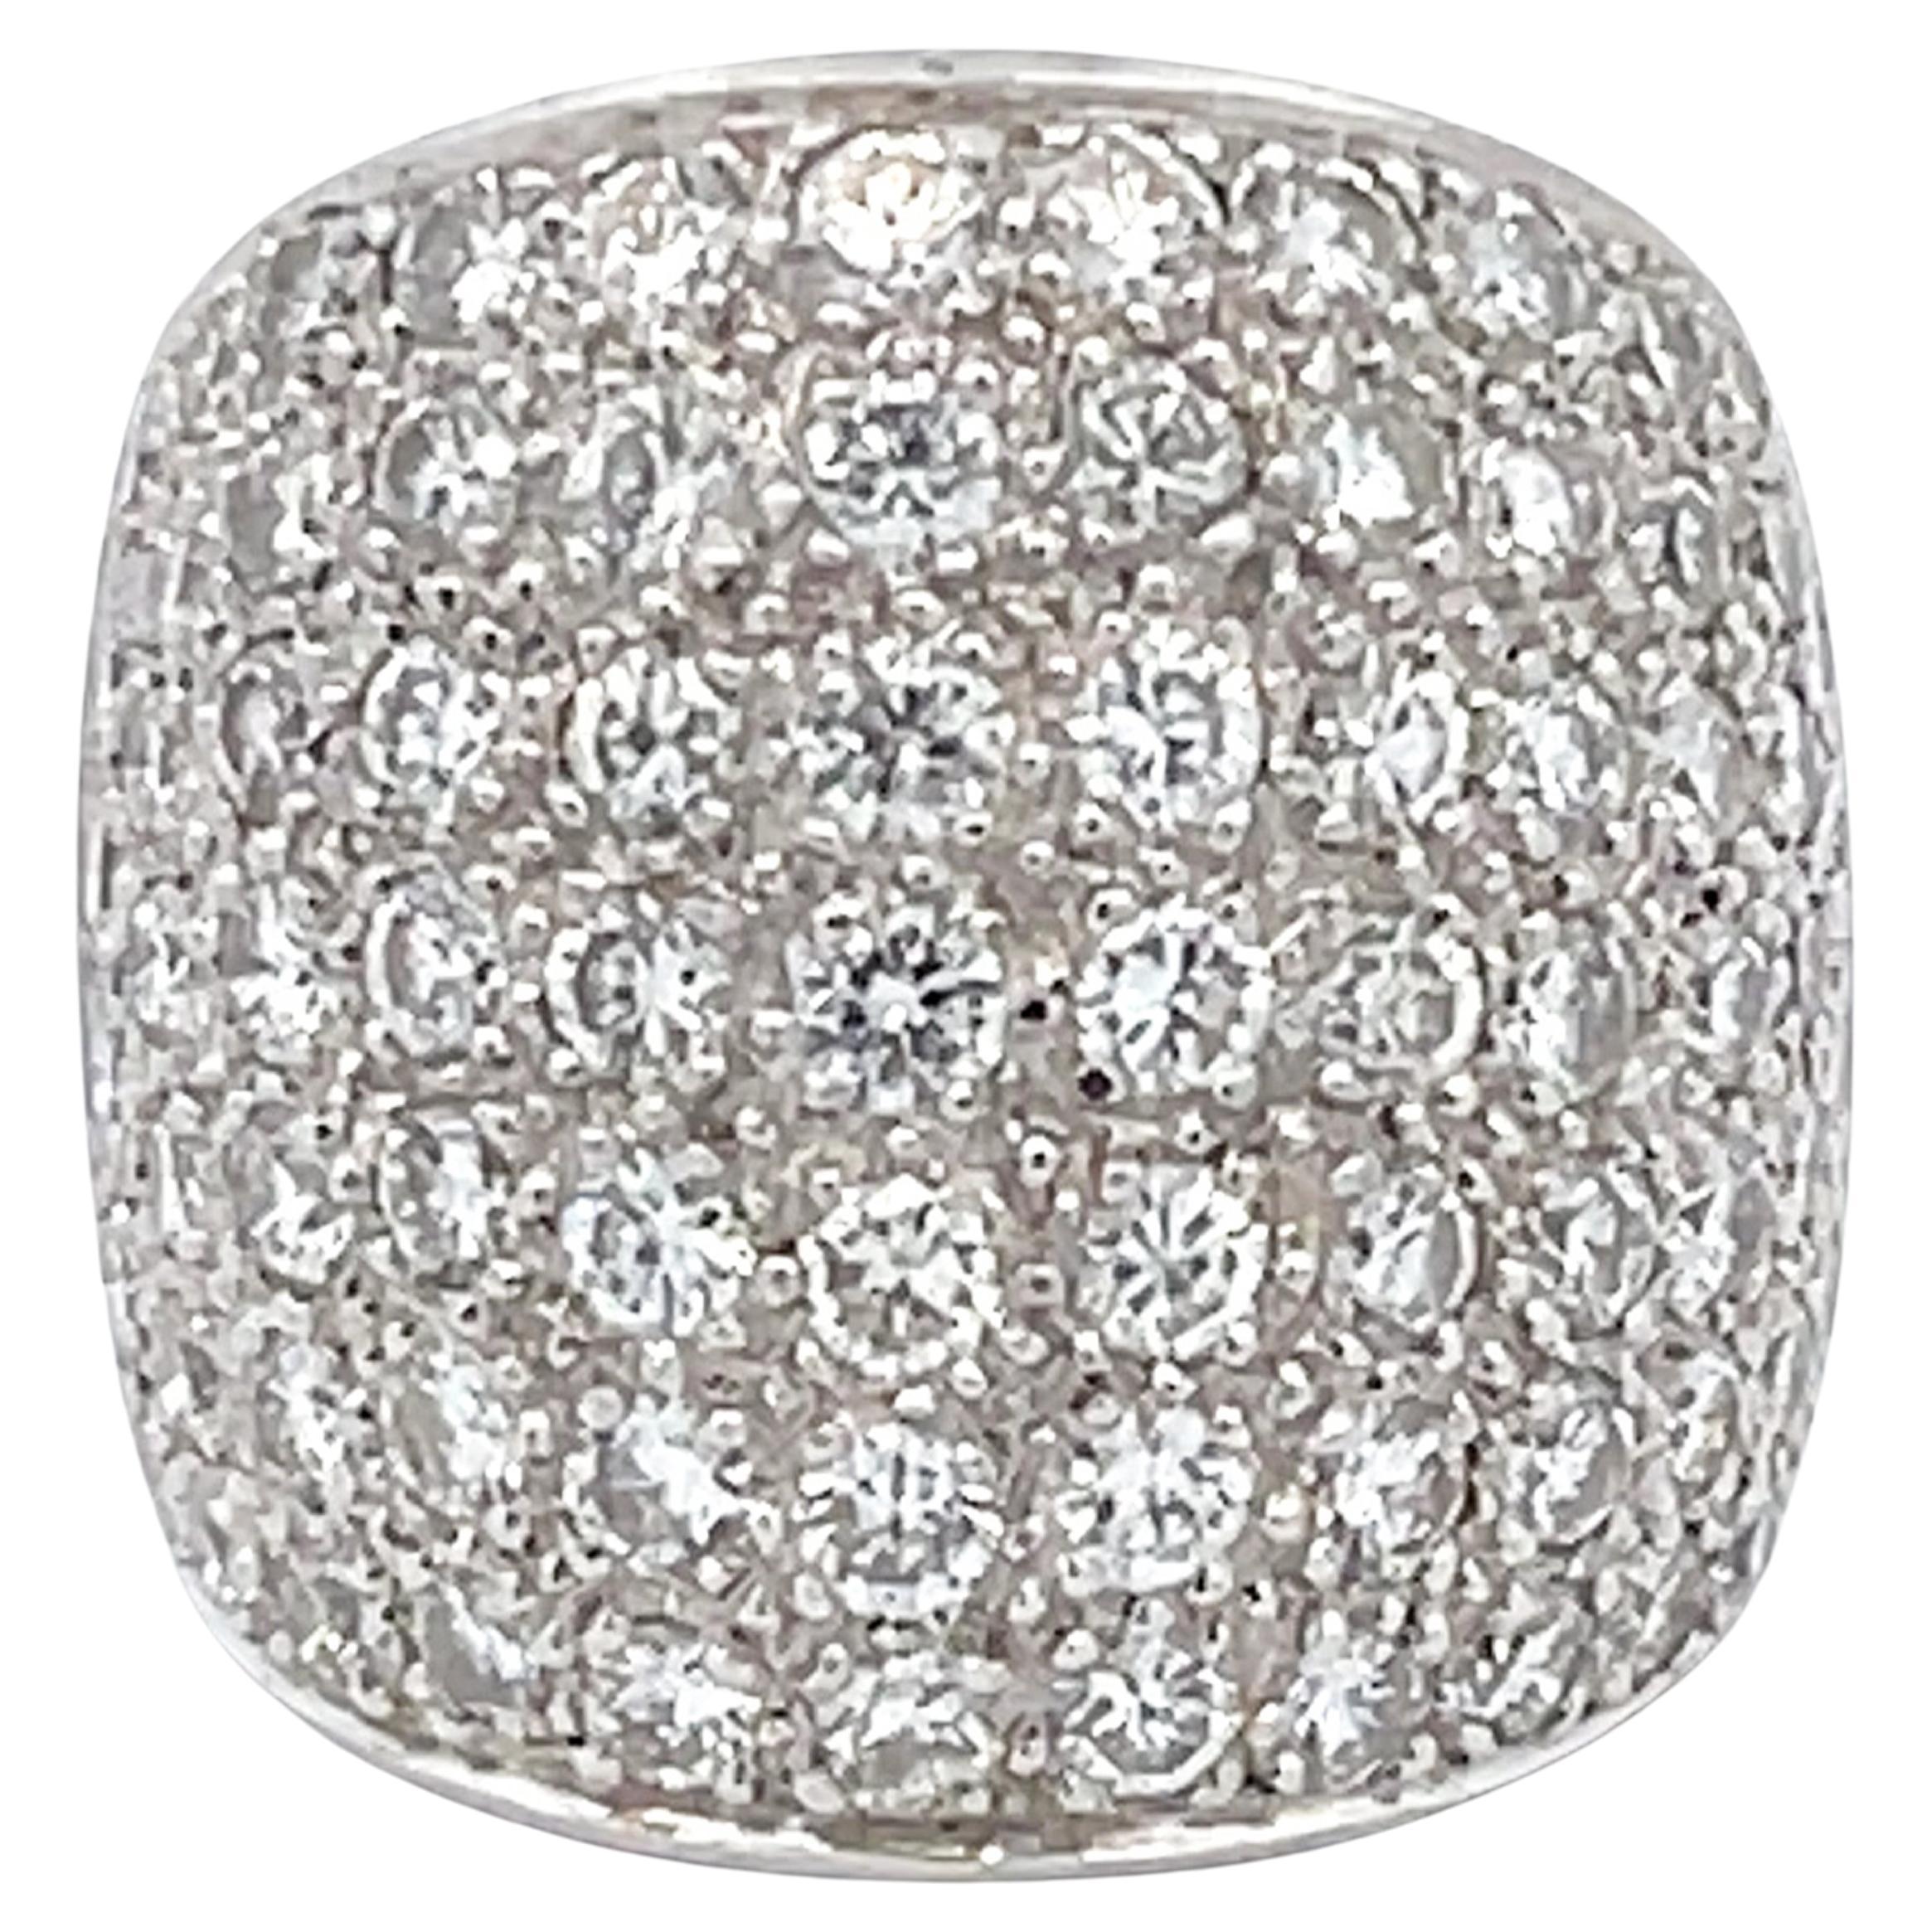 Diamant-Sattee-Ring aus Platin mit Sattel